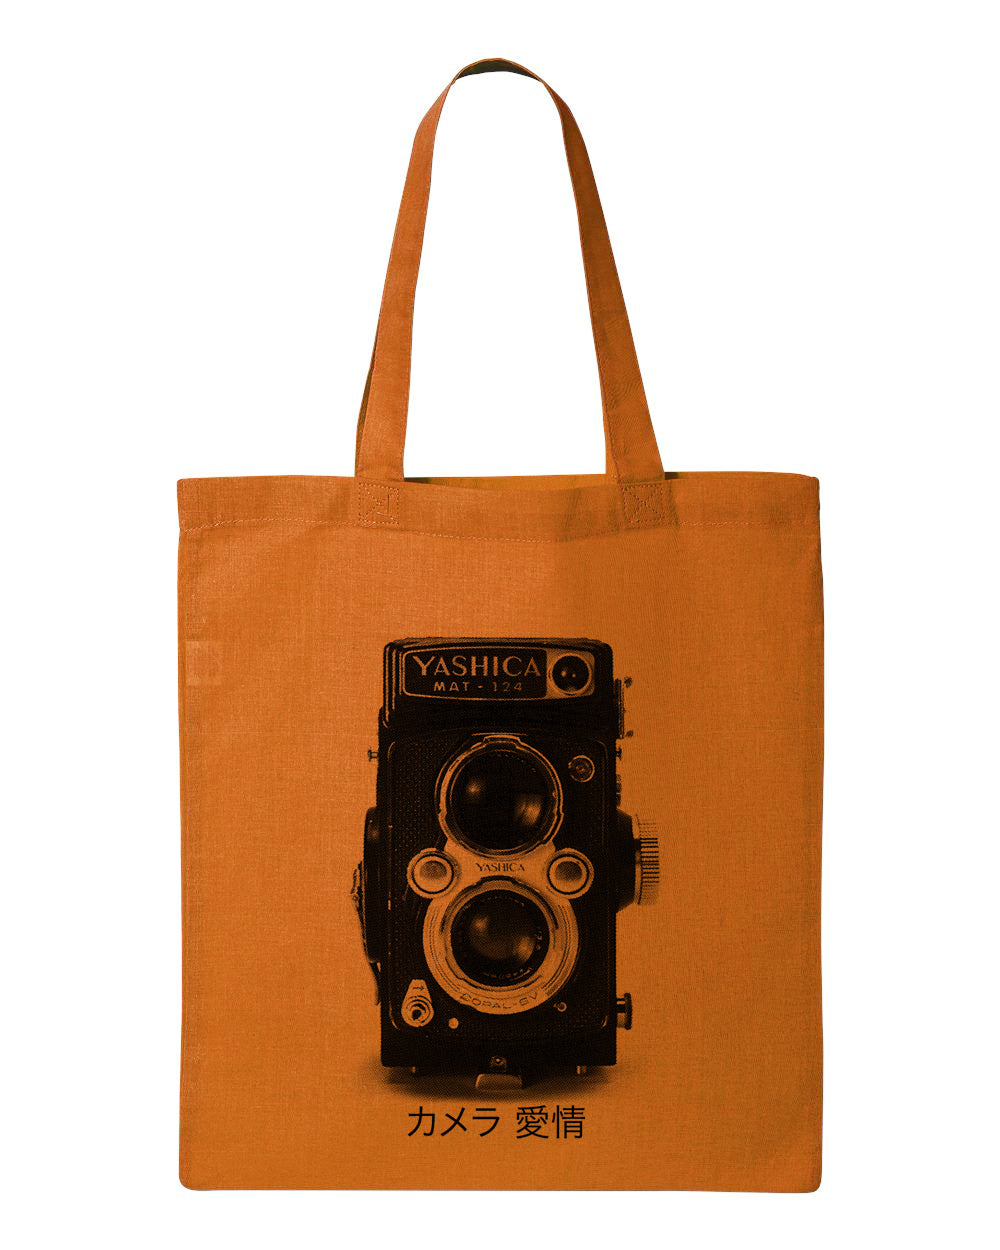 "Yashica" Tote canvas bag